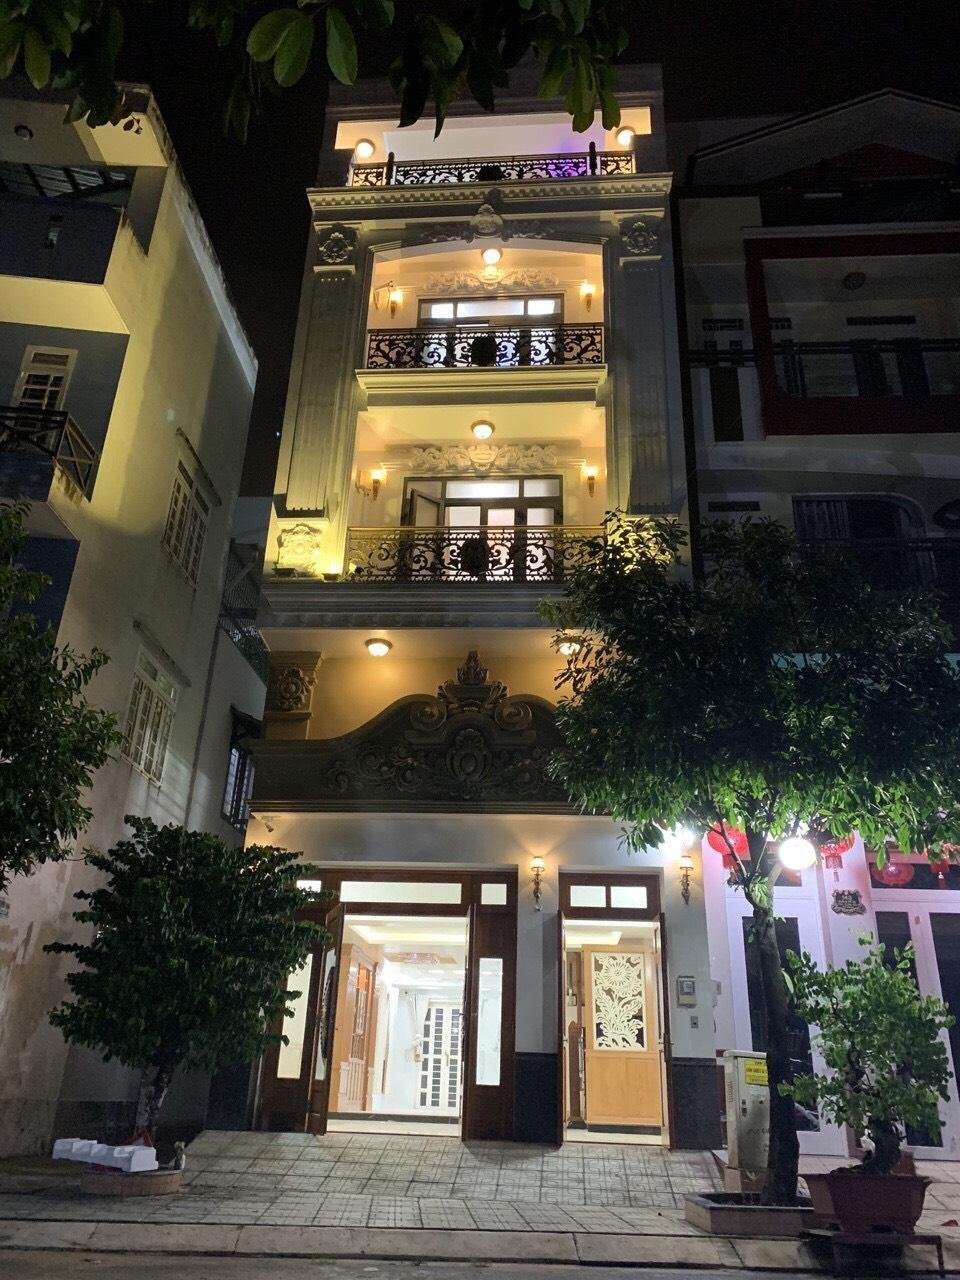 Bán nhà Đẹp phố kinh doanh Huỳnh Thúc Kháng, gần đường Nguyễn Văn Linh giá rẻ chỉ 7 tỷ